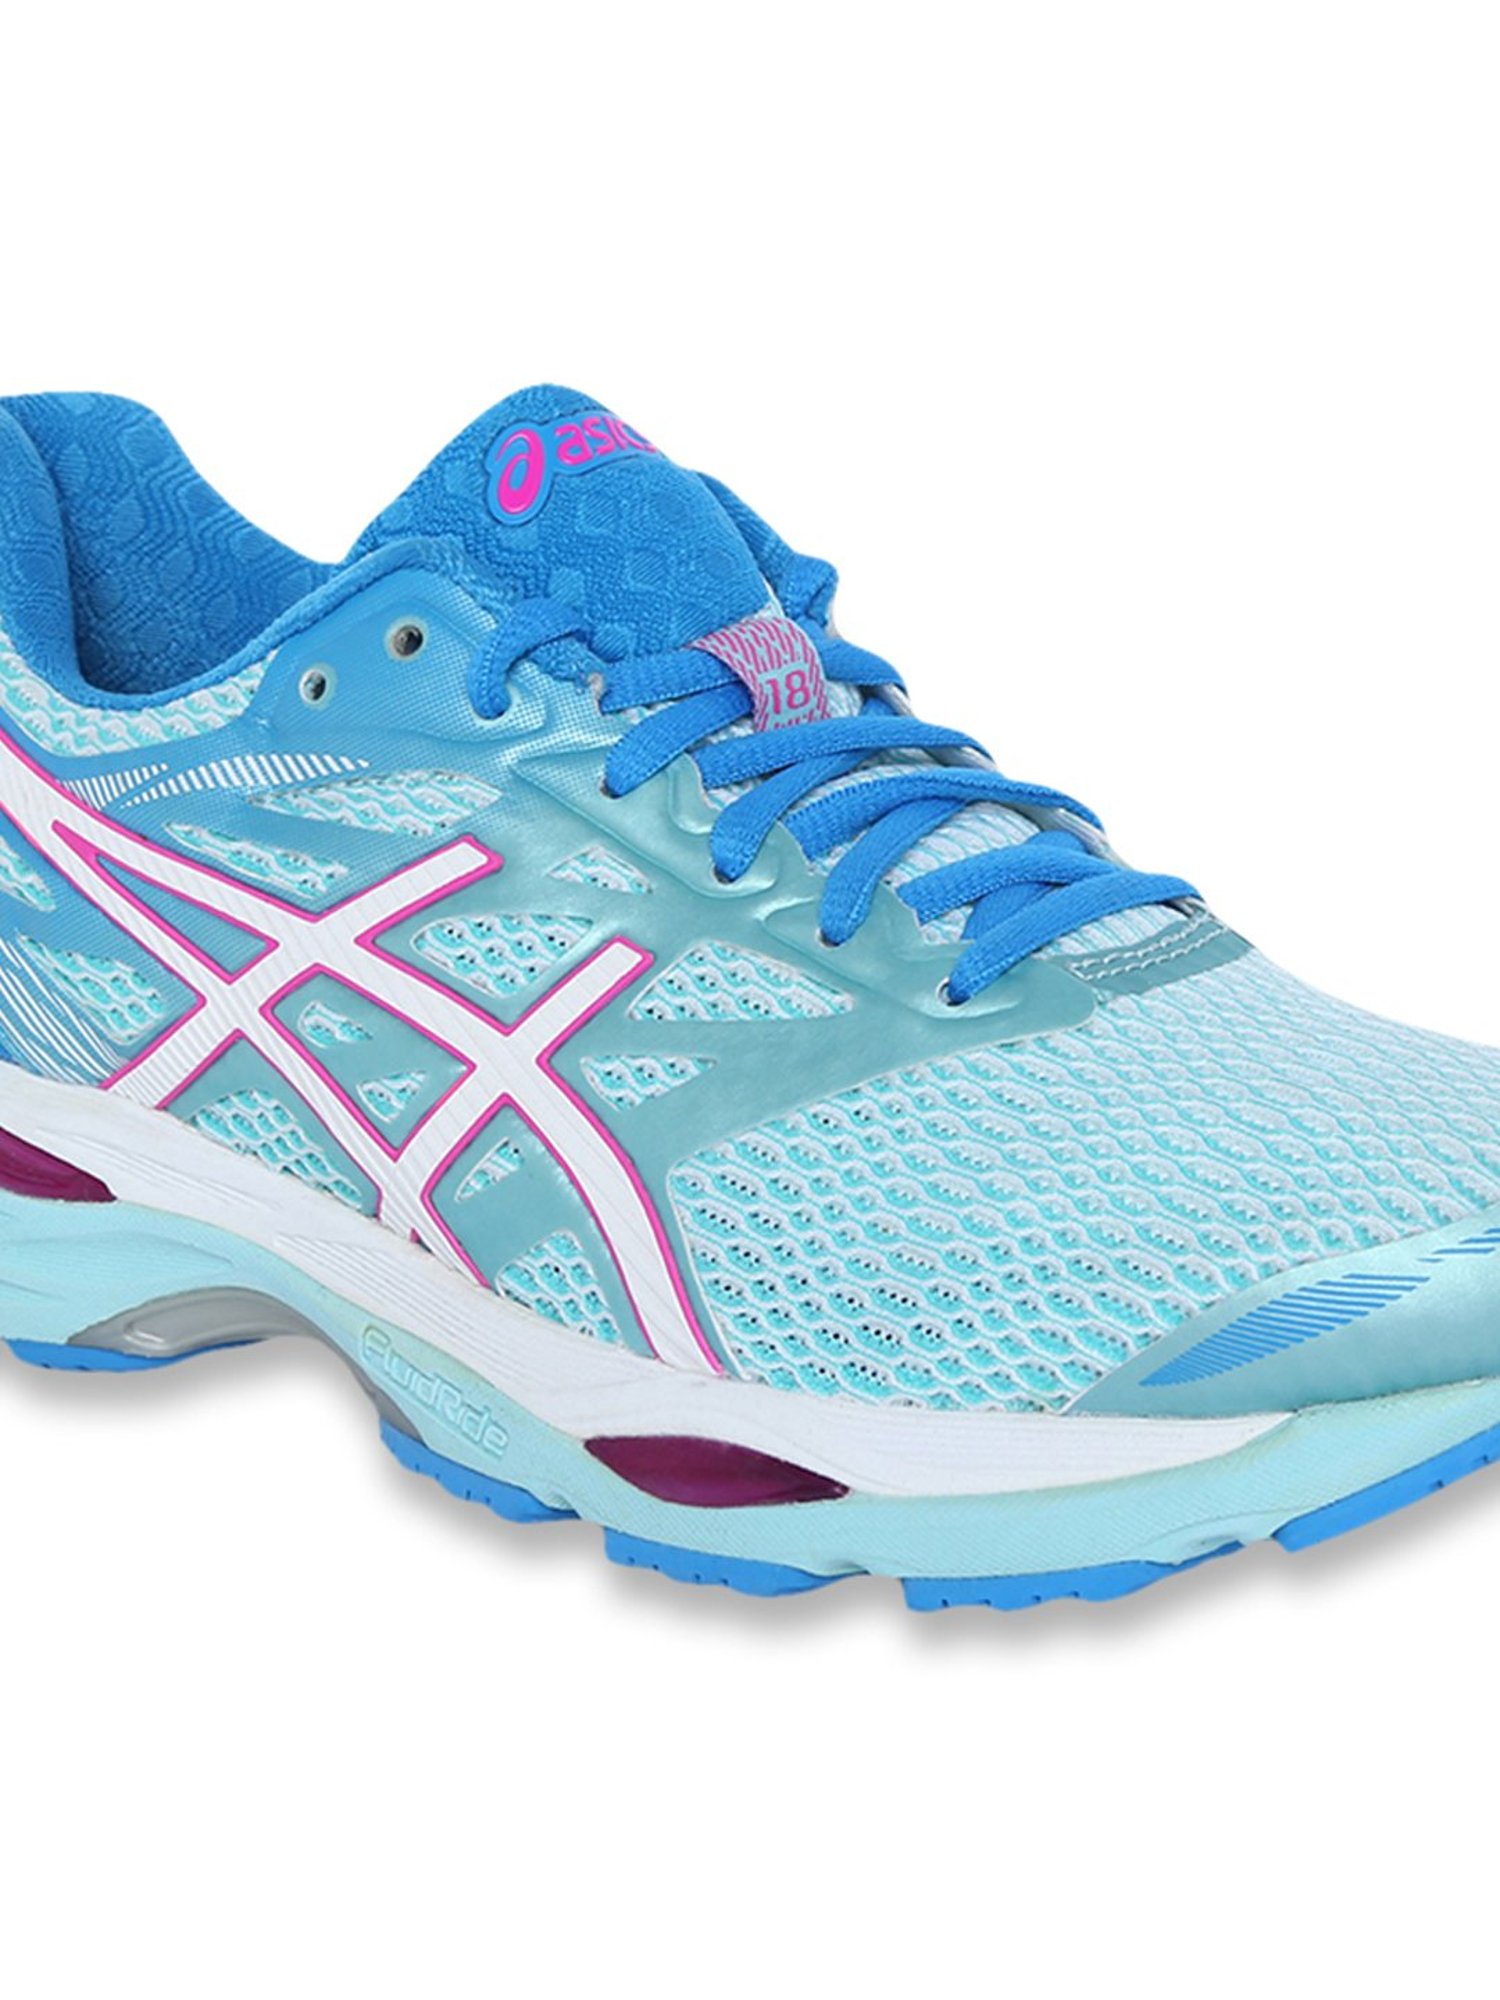 Verter darse cuenta artículo Buy Asics Gel Cumulus 18 Aqua Splash Running Shoes for Women at Best Price  @ Tata CLiQ